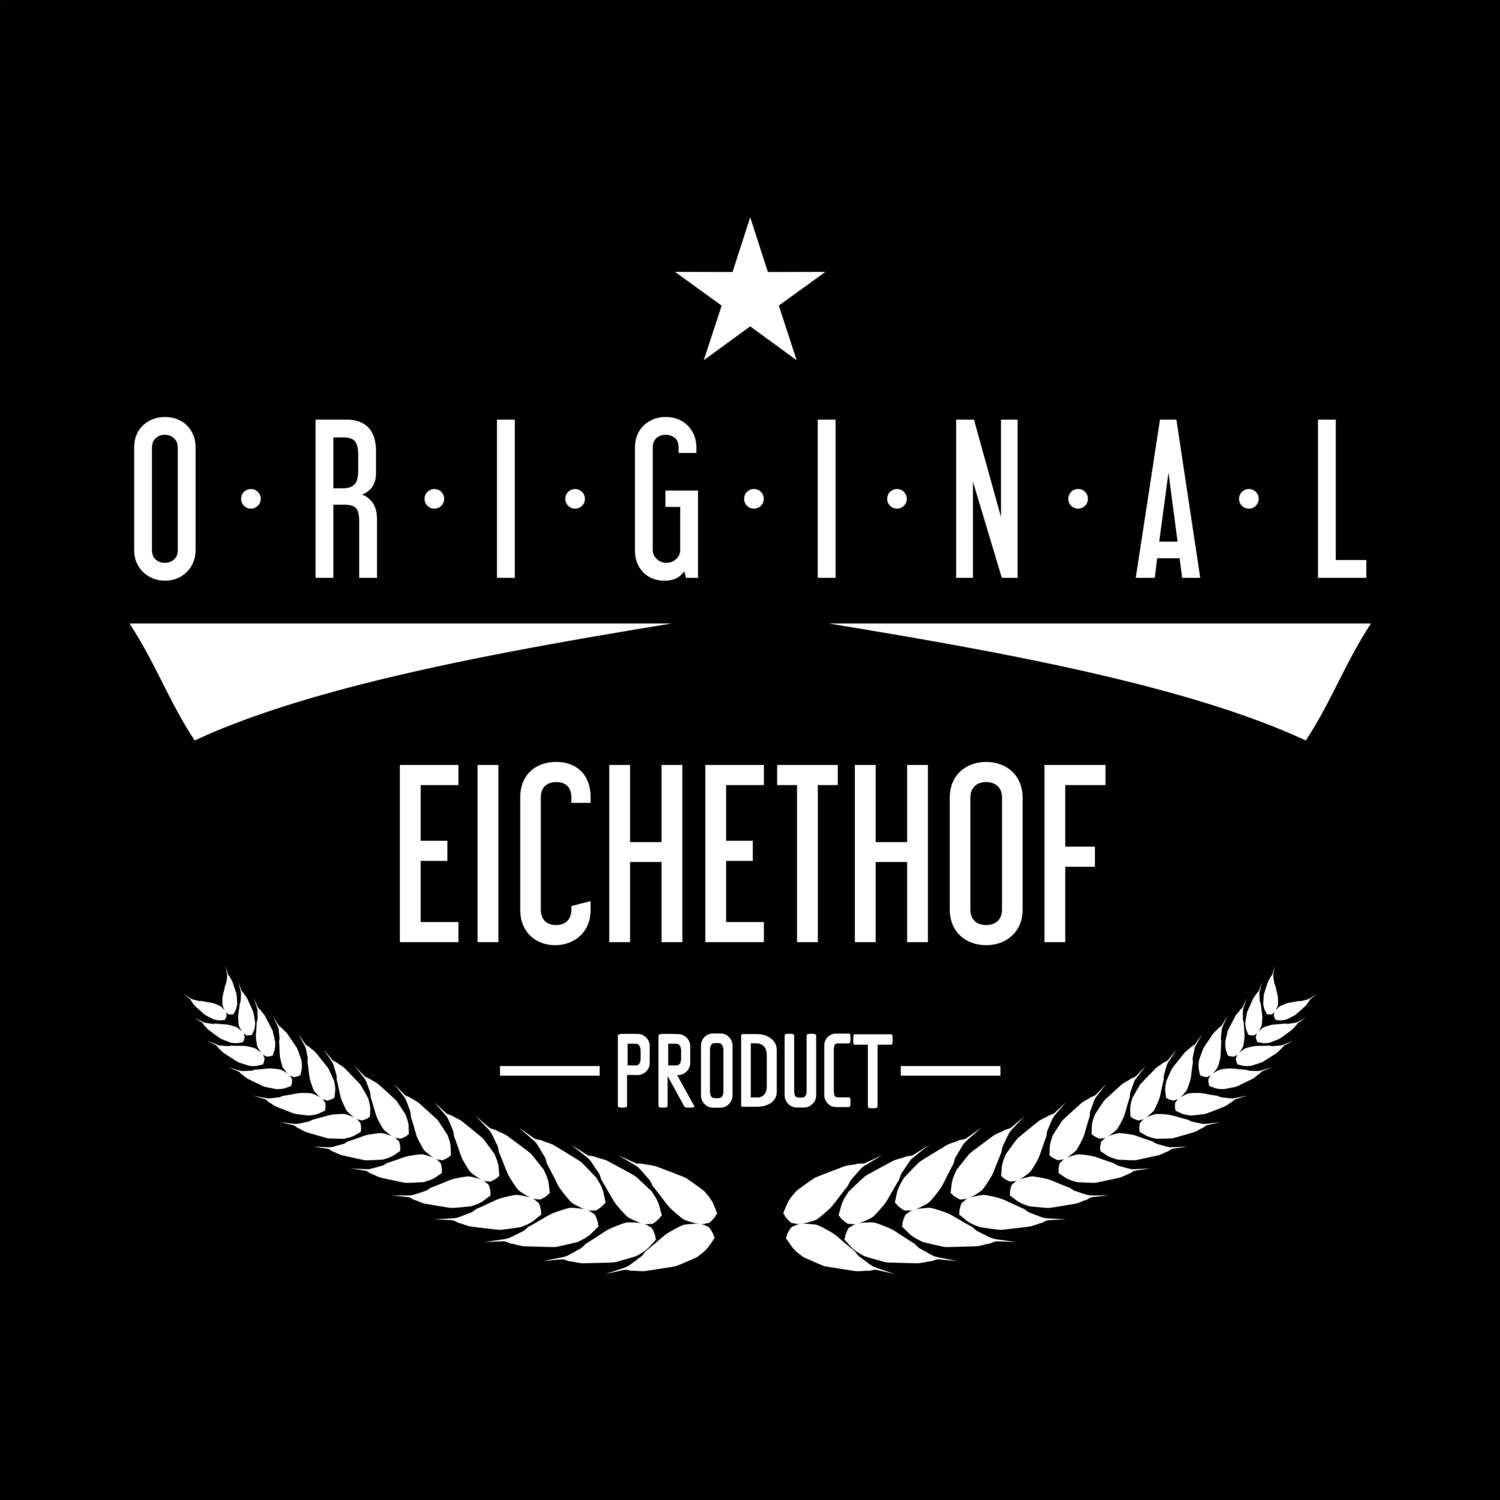 Eichethof T-Shirt »Original Product«